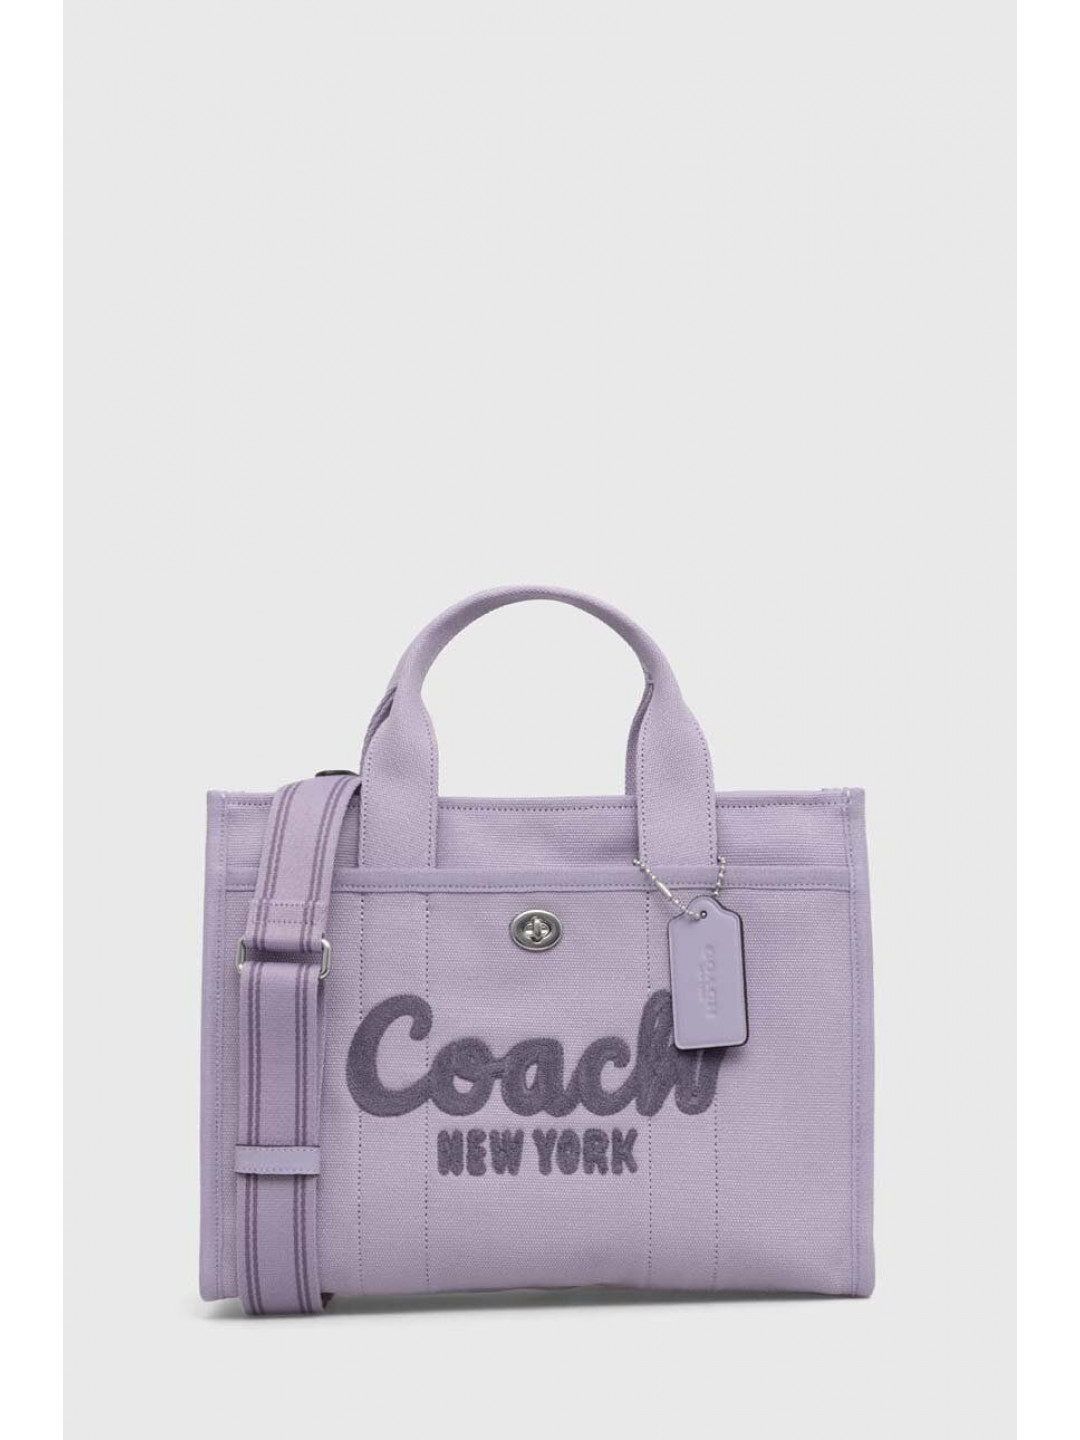 Kabelka Coach fialová barva